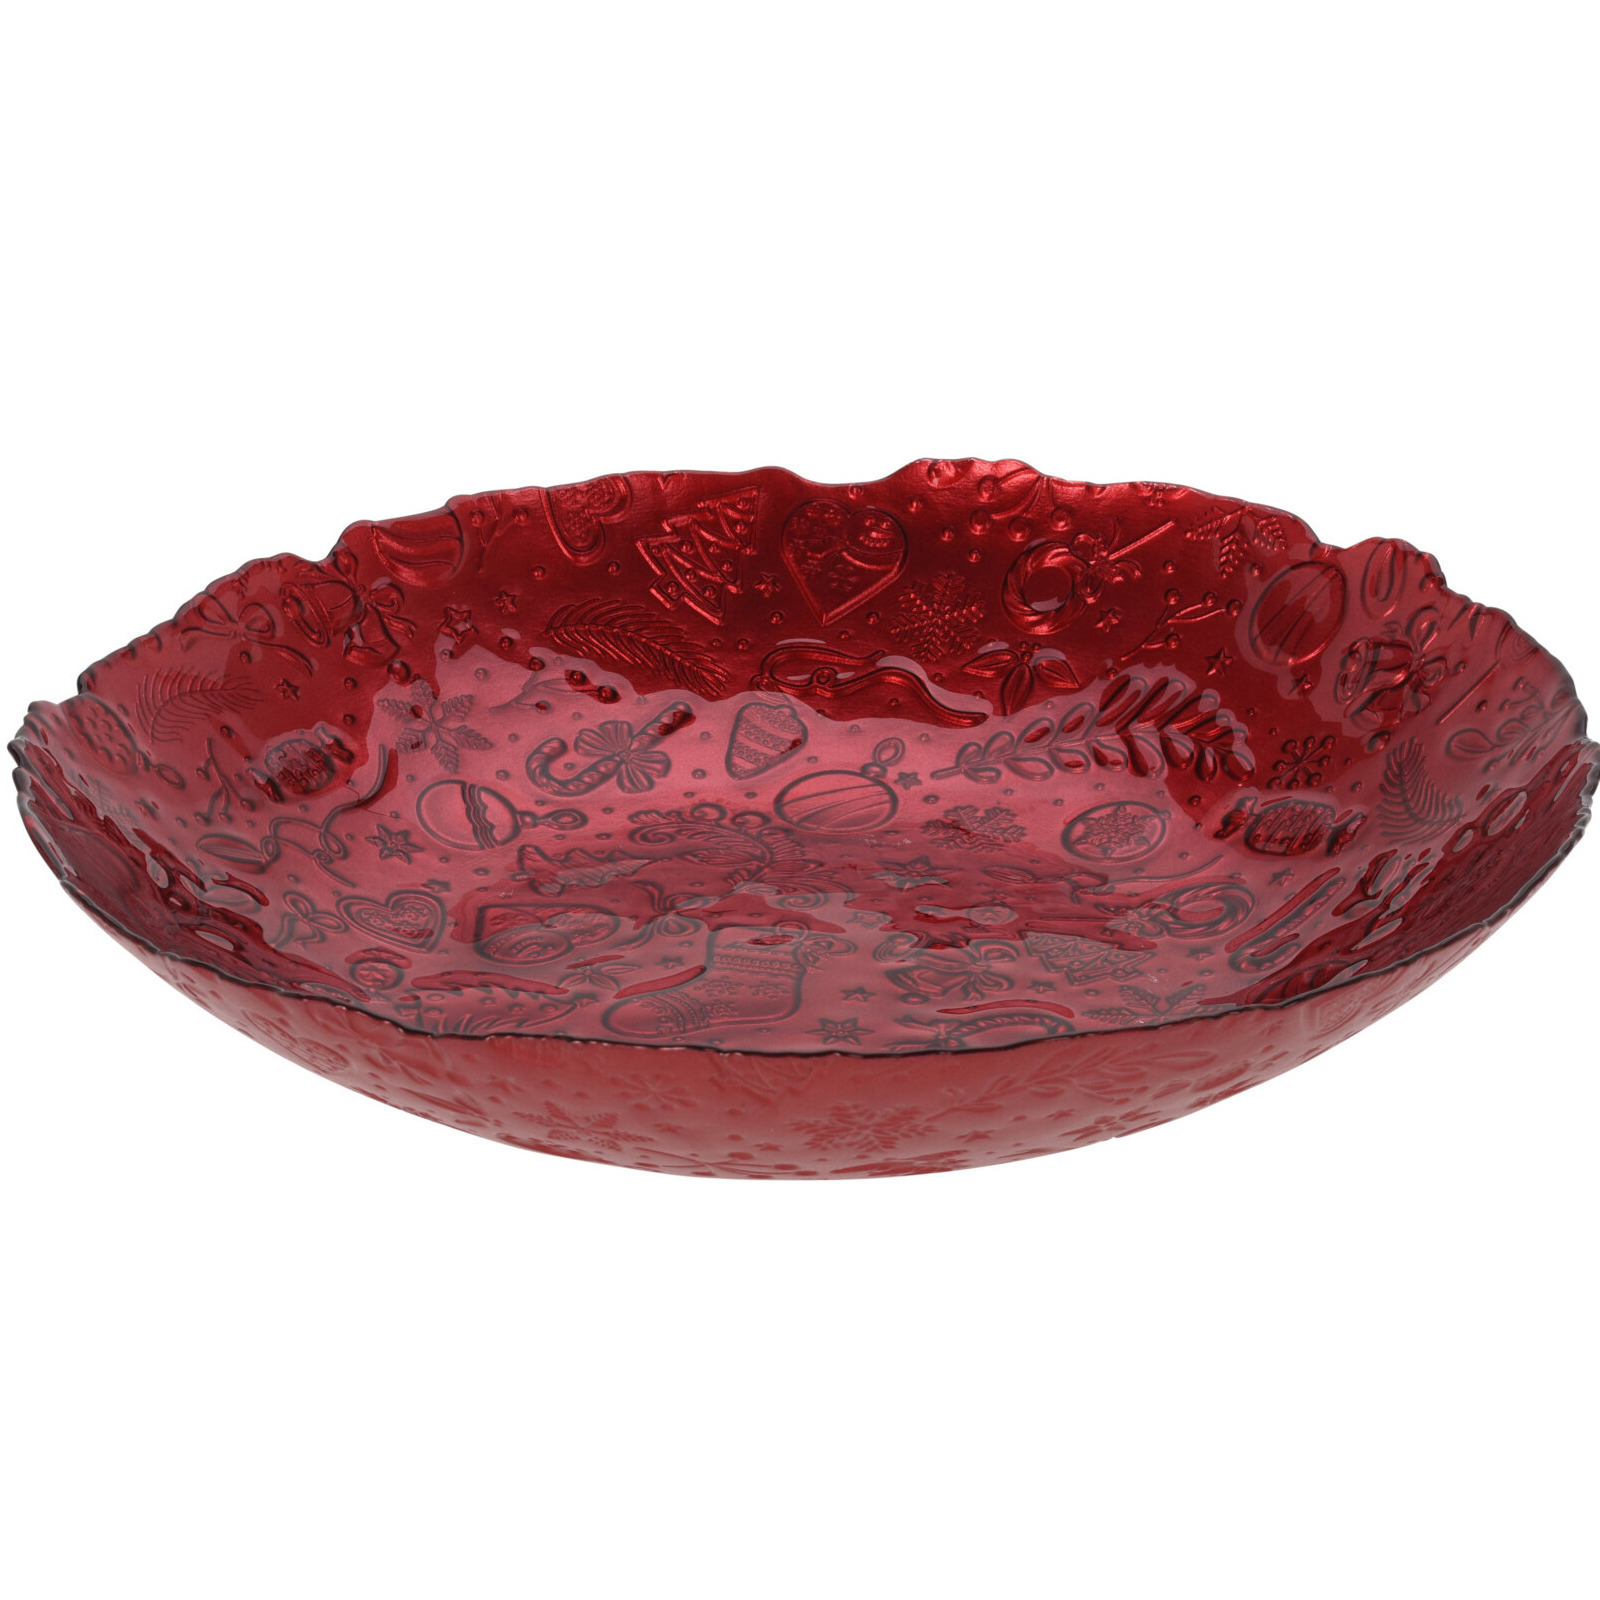 Merkloos Glazen decoratie schaal/fruitschaal rood rond D40 x H7 cm -